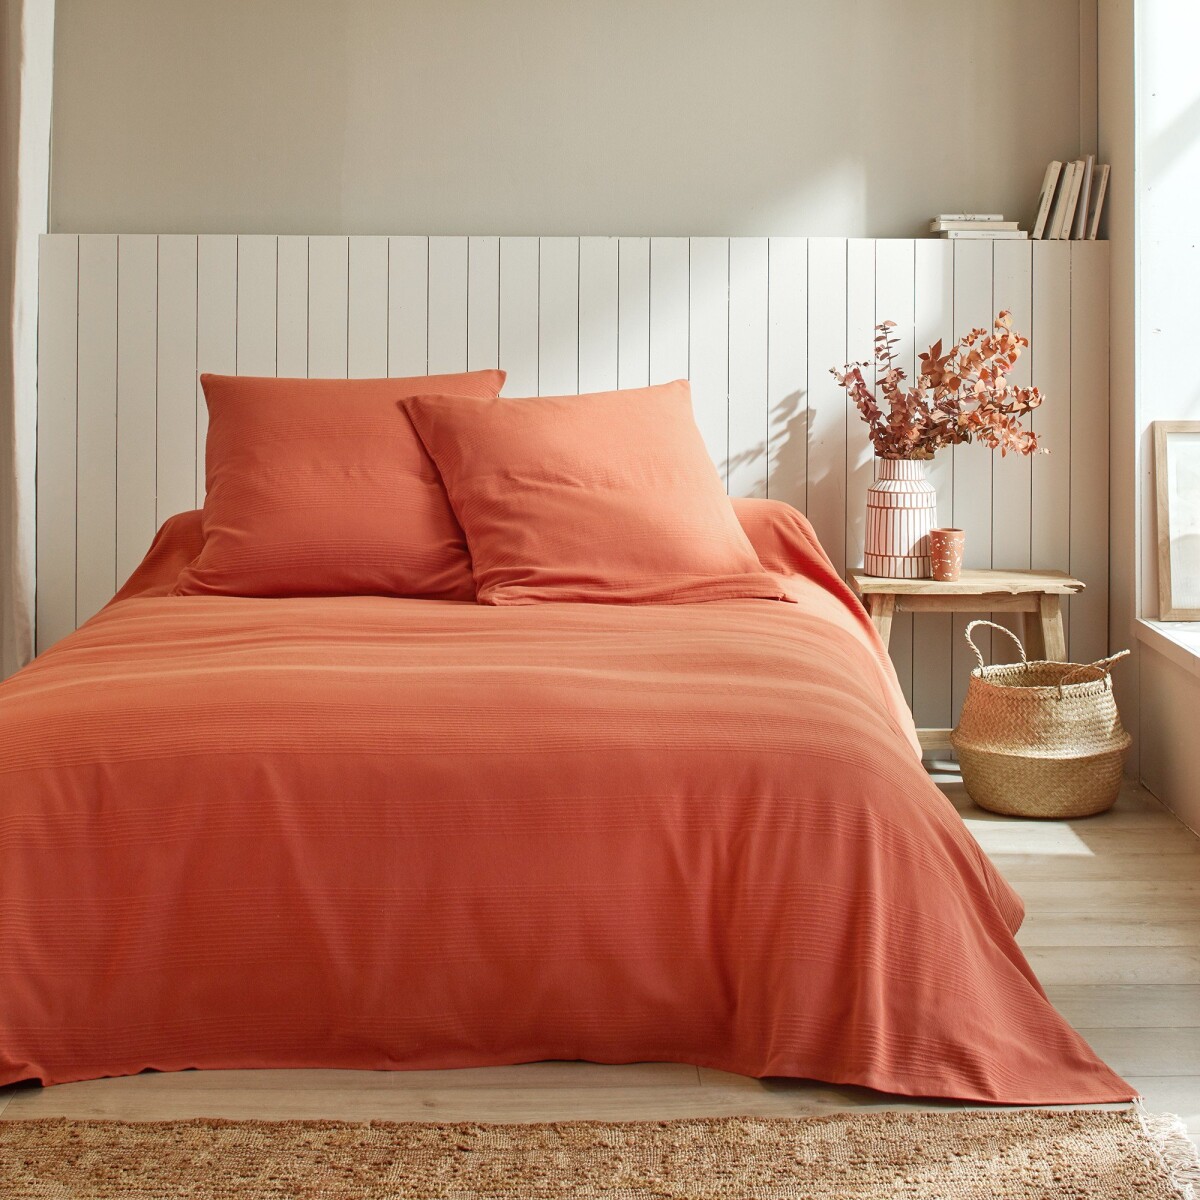 Jednobarevný tkaný přehoz na postel, bavlna